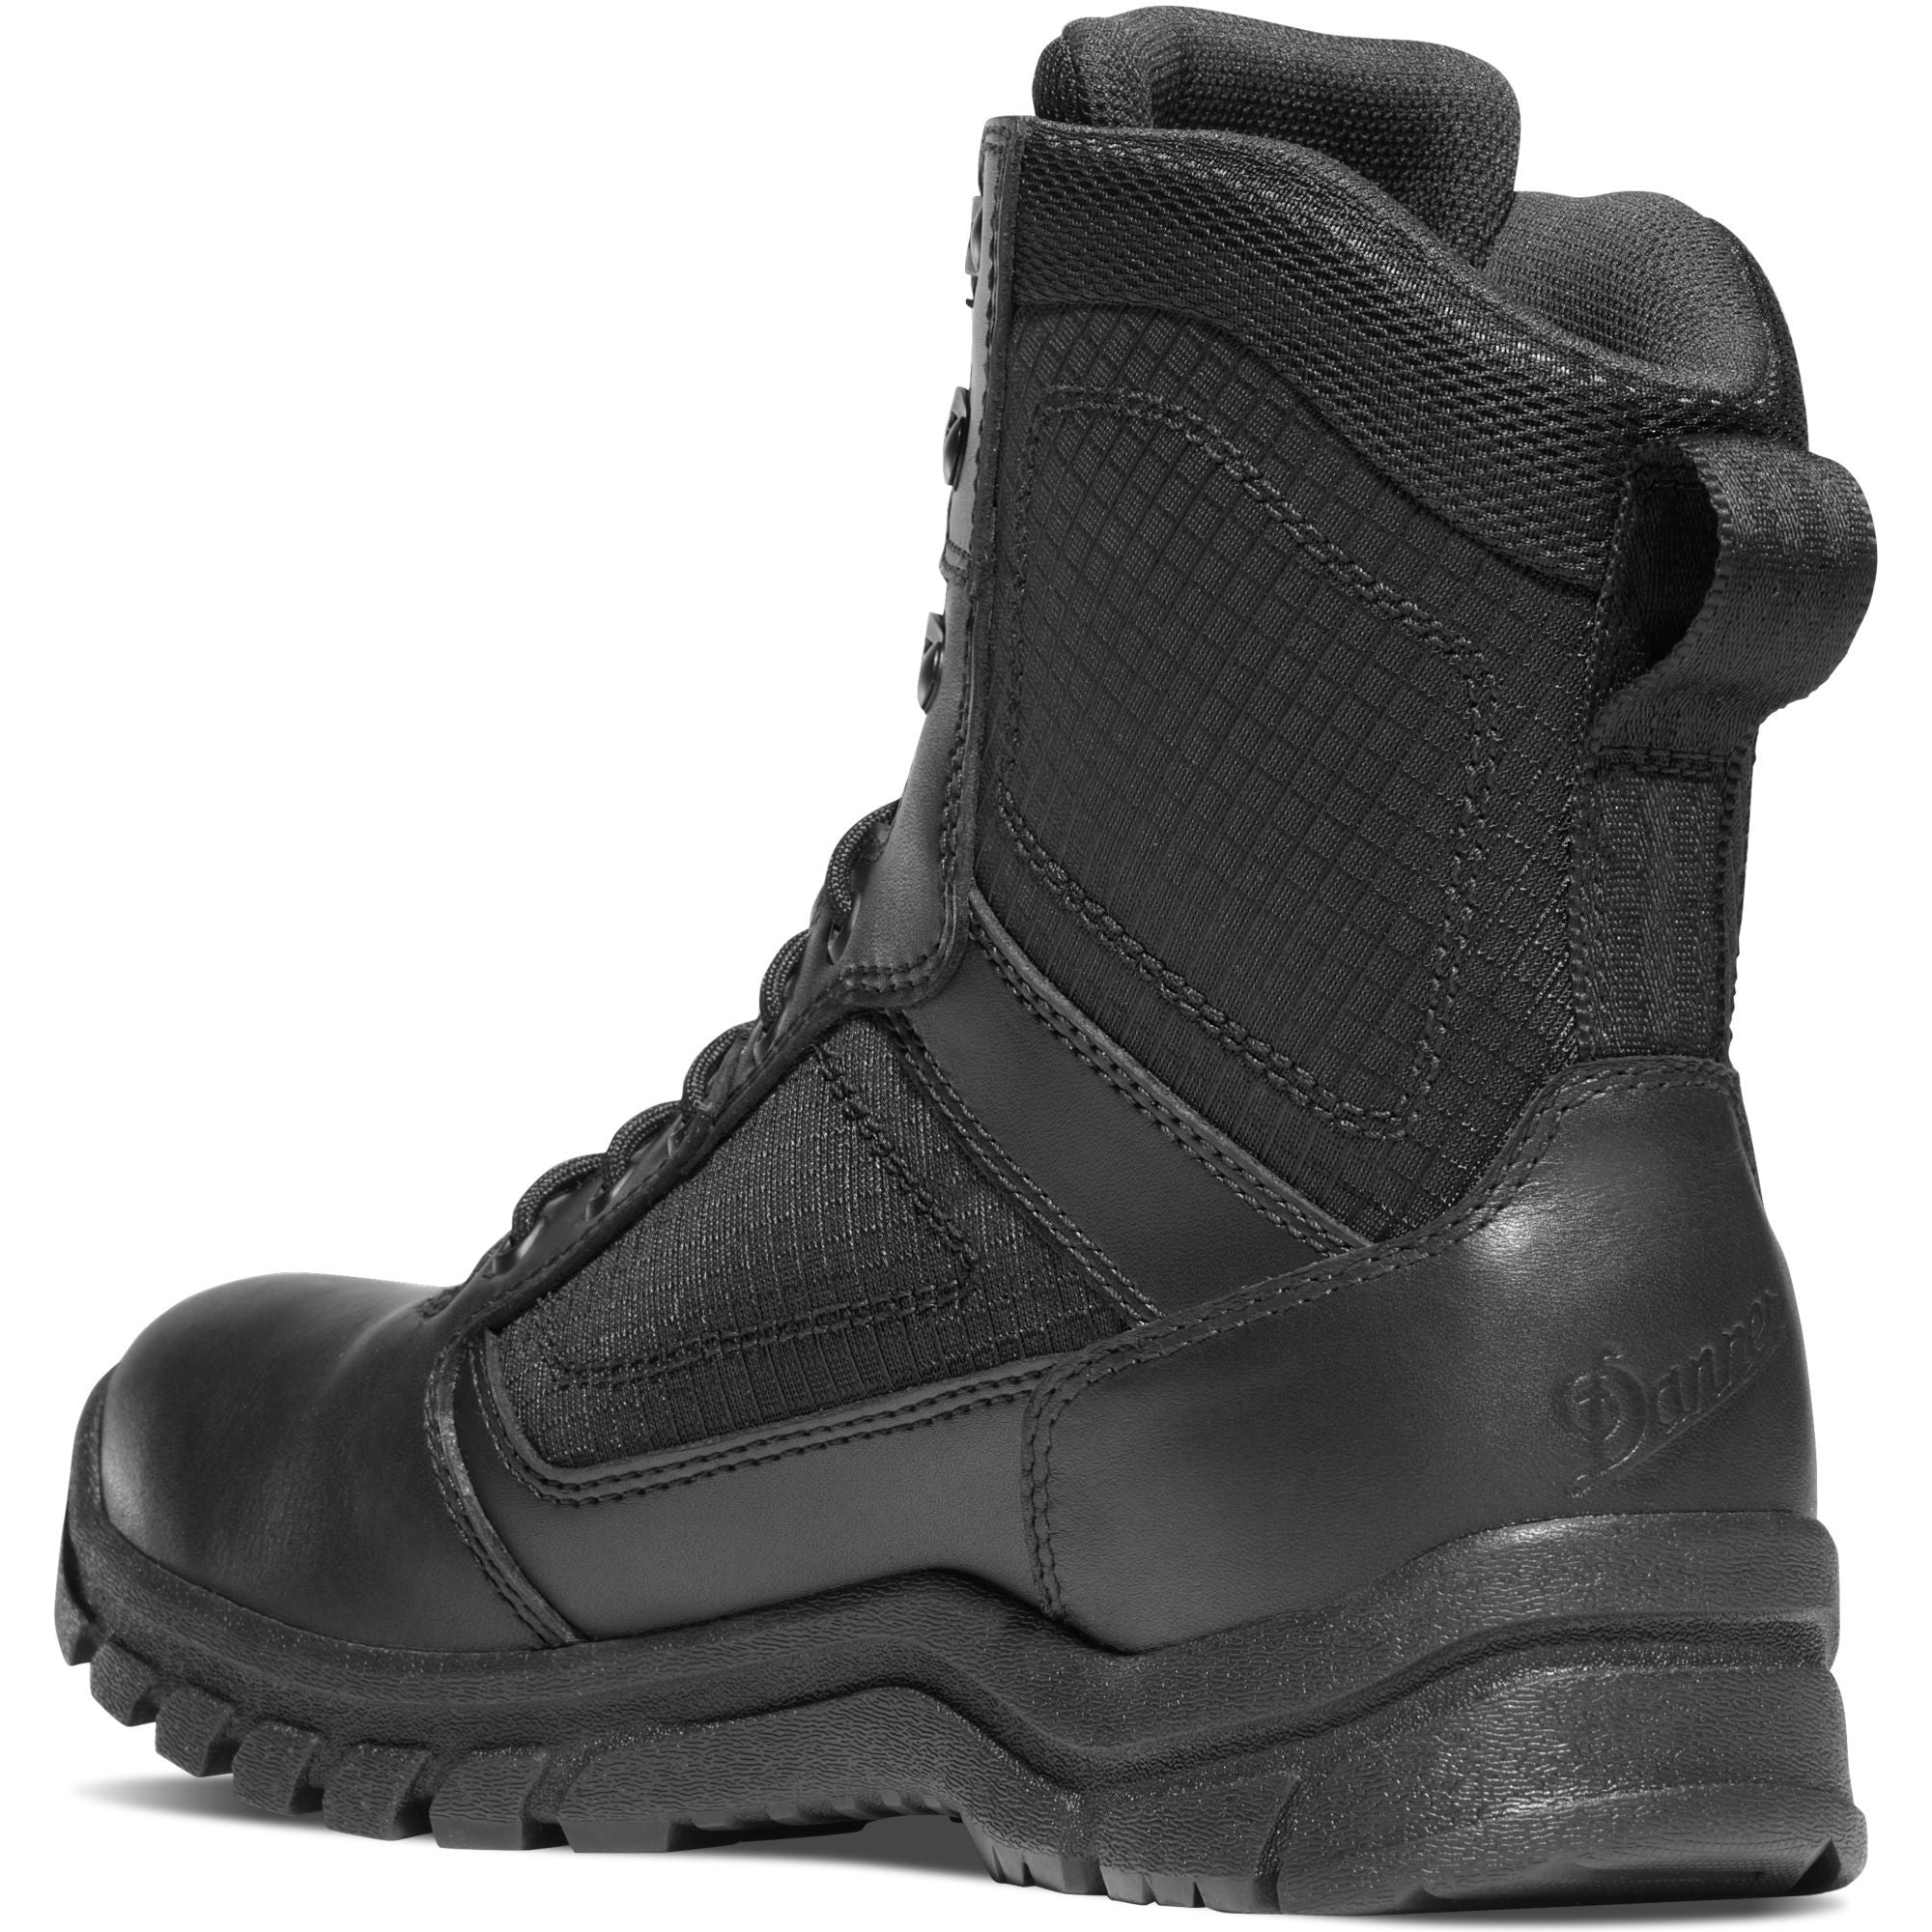 Danner Men's Lookout 8" Waterproof Duty Boot - Black - 23822  - Overlook Boots